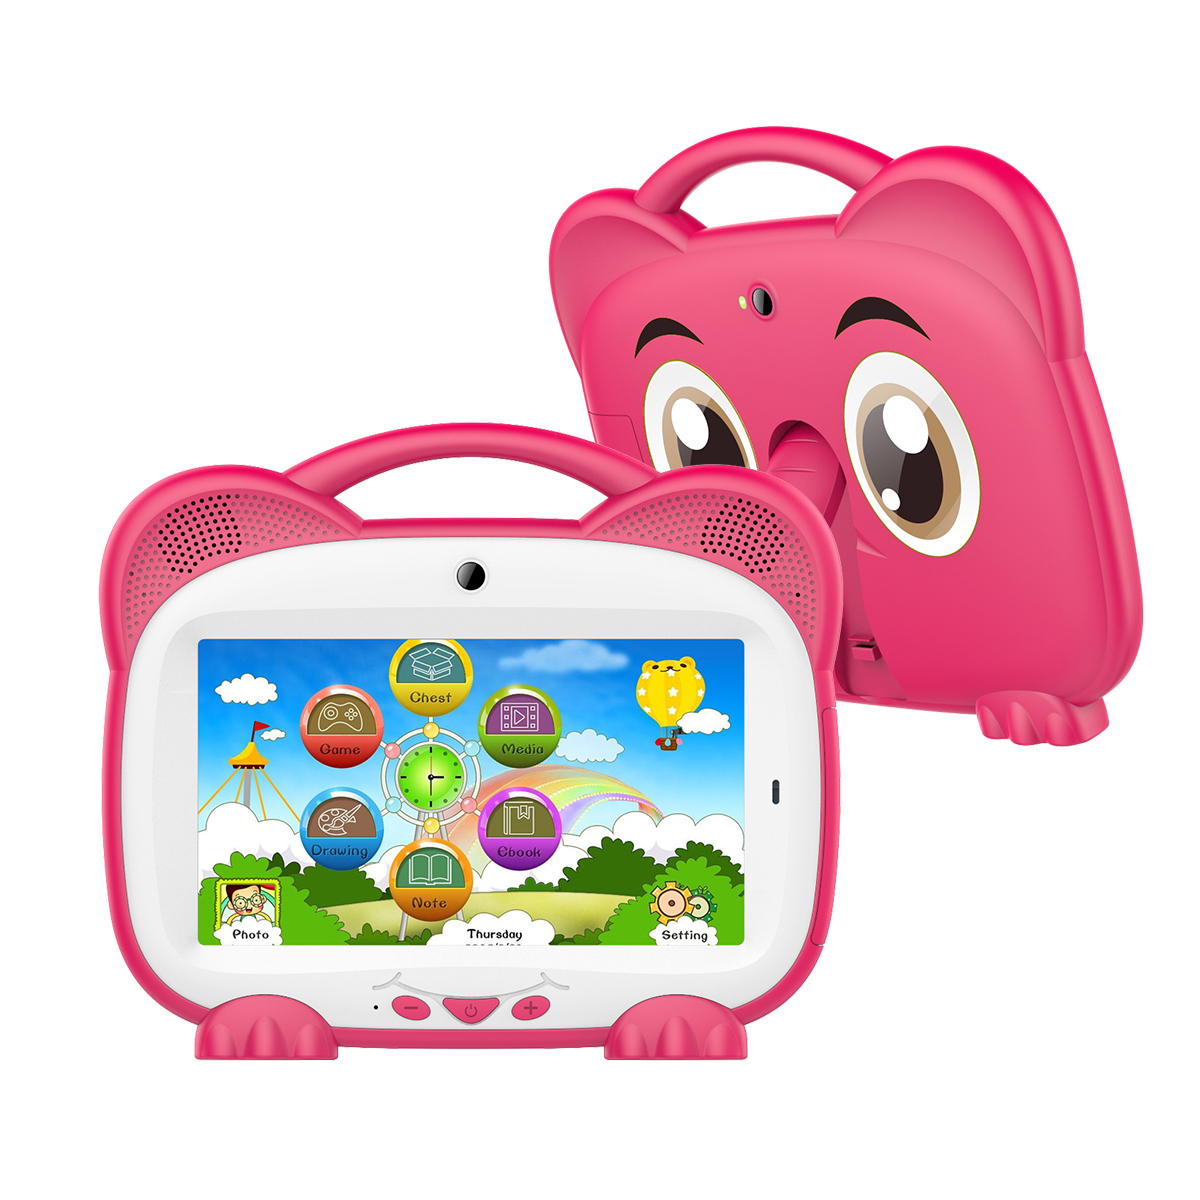 Tablette pour enfant Modio M20, 10.1 pouces, 6000 mAh, GPS, G-SENSOR,  Bluetooth, radio FM